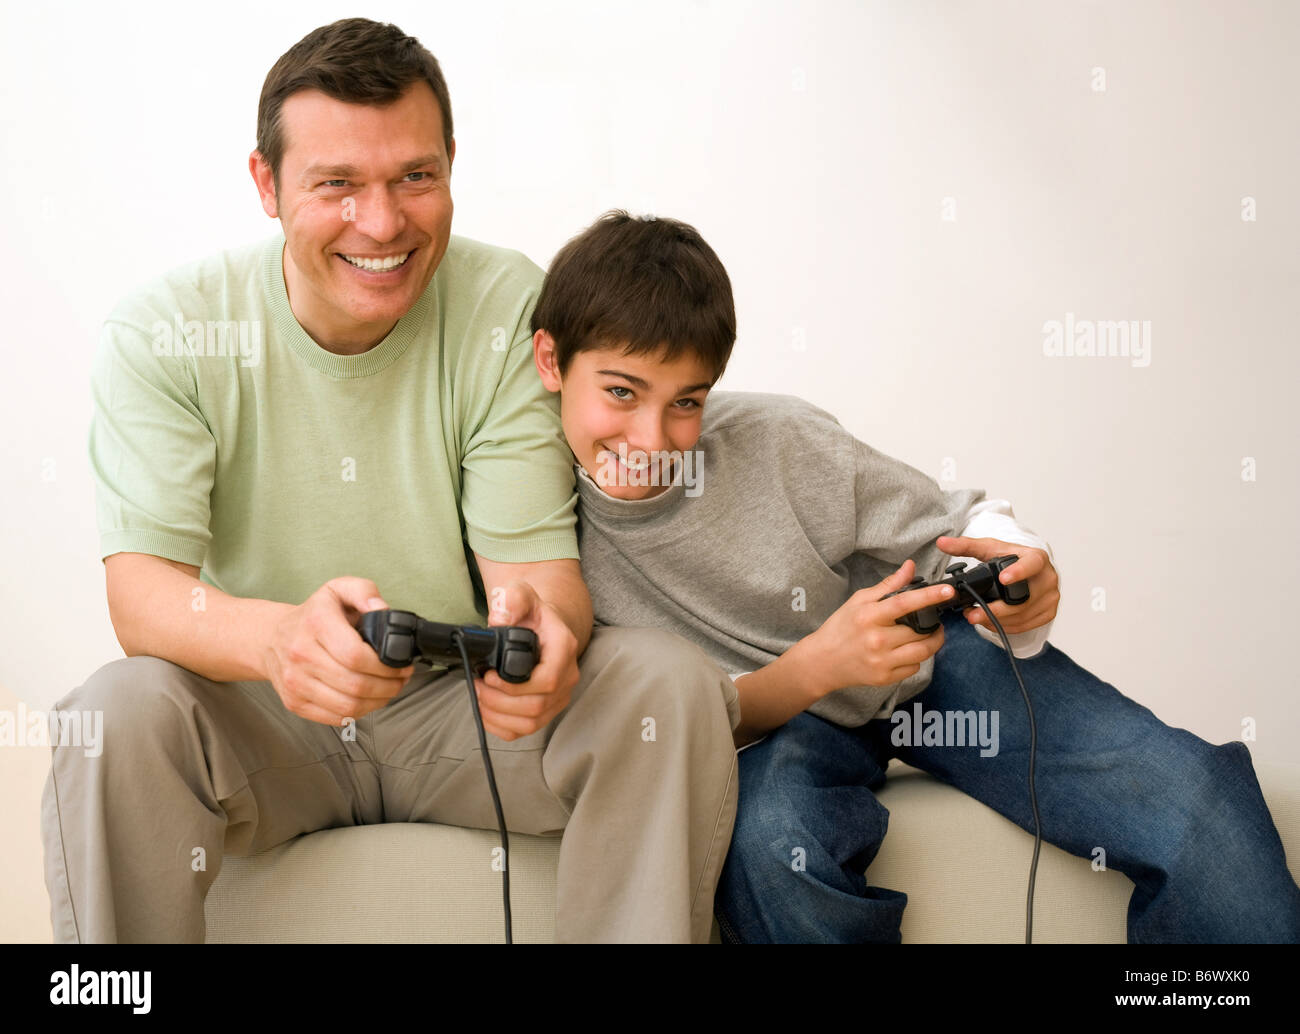 Папа играет с сыном. Отец и сын играют в Видеоигры. Папа и сын играют в приставку. Папа с сыном играют в плейстейшен.